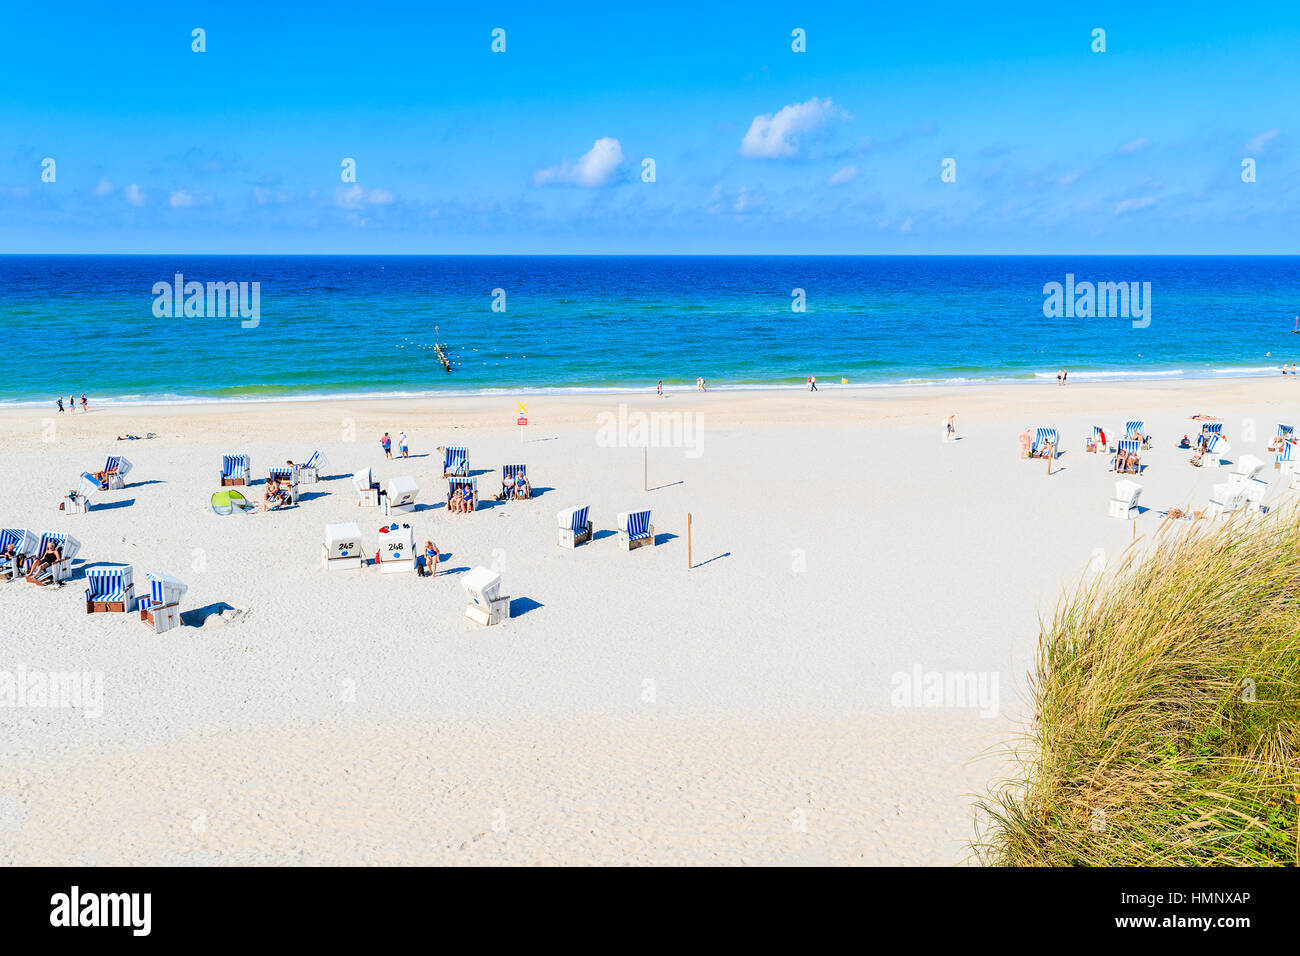 Vista de la playa de arena blanca de Kampen desde el acantilado costero, isla de Sylt, Alemania Foto de stock